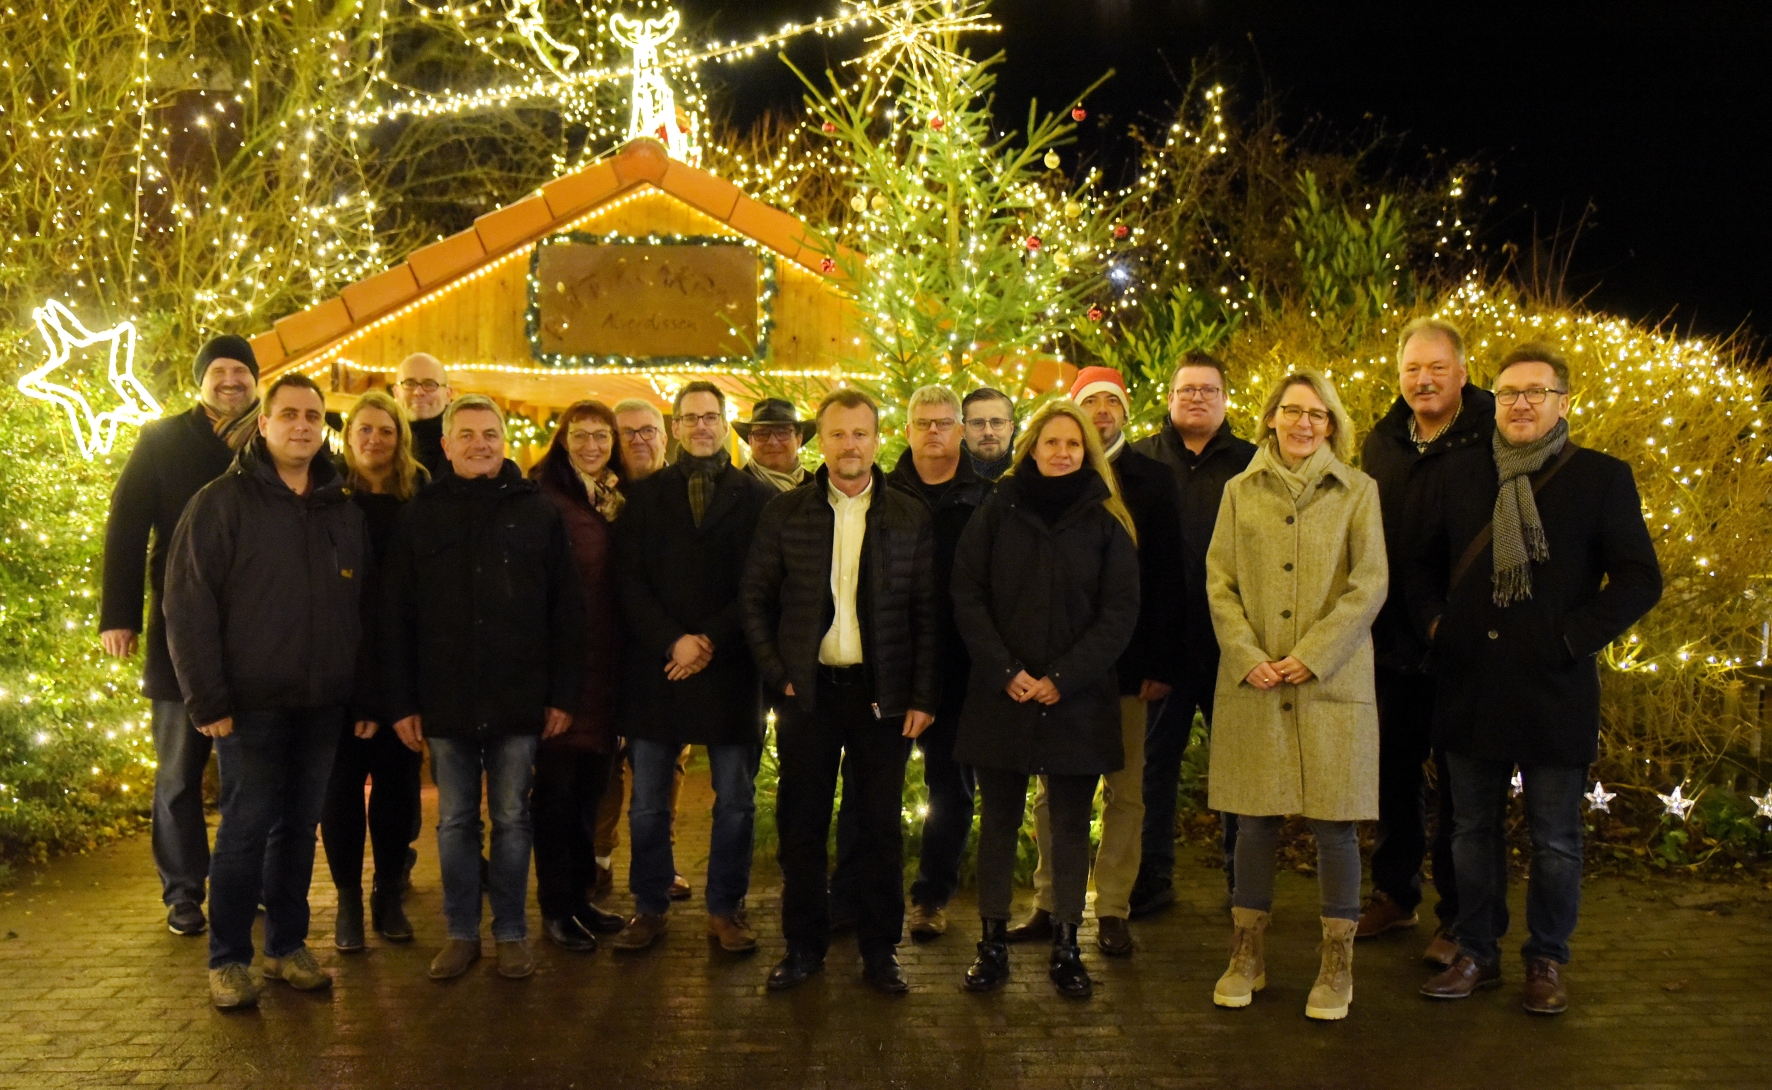 Im Nachgang zur Klausurtagung besuchte die CDU- Fraktion das Alverdisser Weihnachtshaus von Klaus und Inge Düwel. Neben einem Dankeschön für das Engagement übergaben die Mitglieder einen spontan gesammelten Betrag von 250,-- € für die gute Sache.